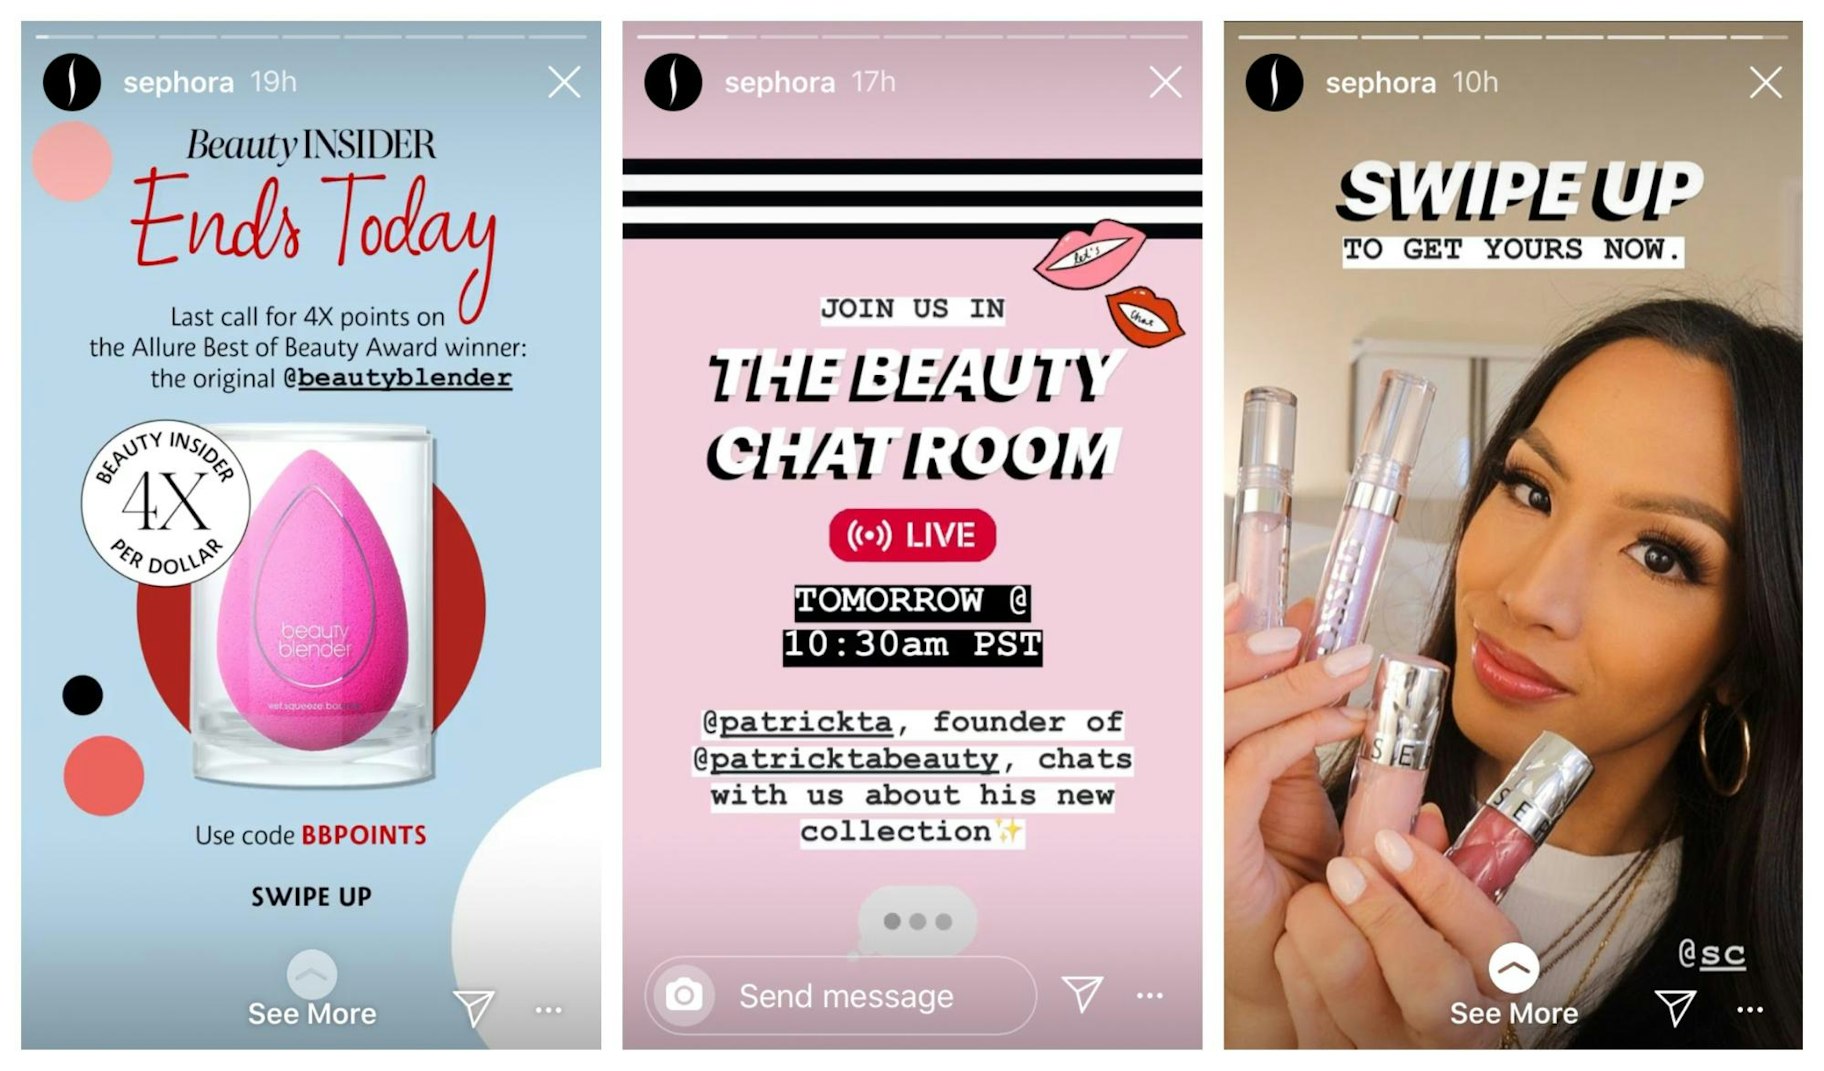 Beispiel für ein Design einer Sephora-Instagram-Story